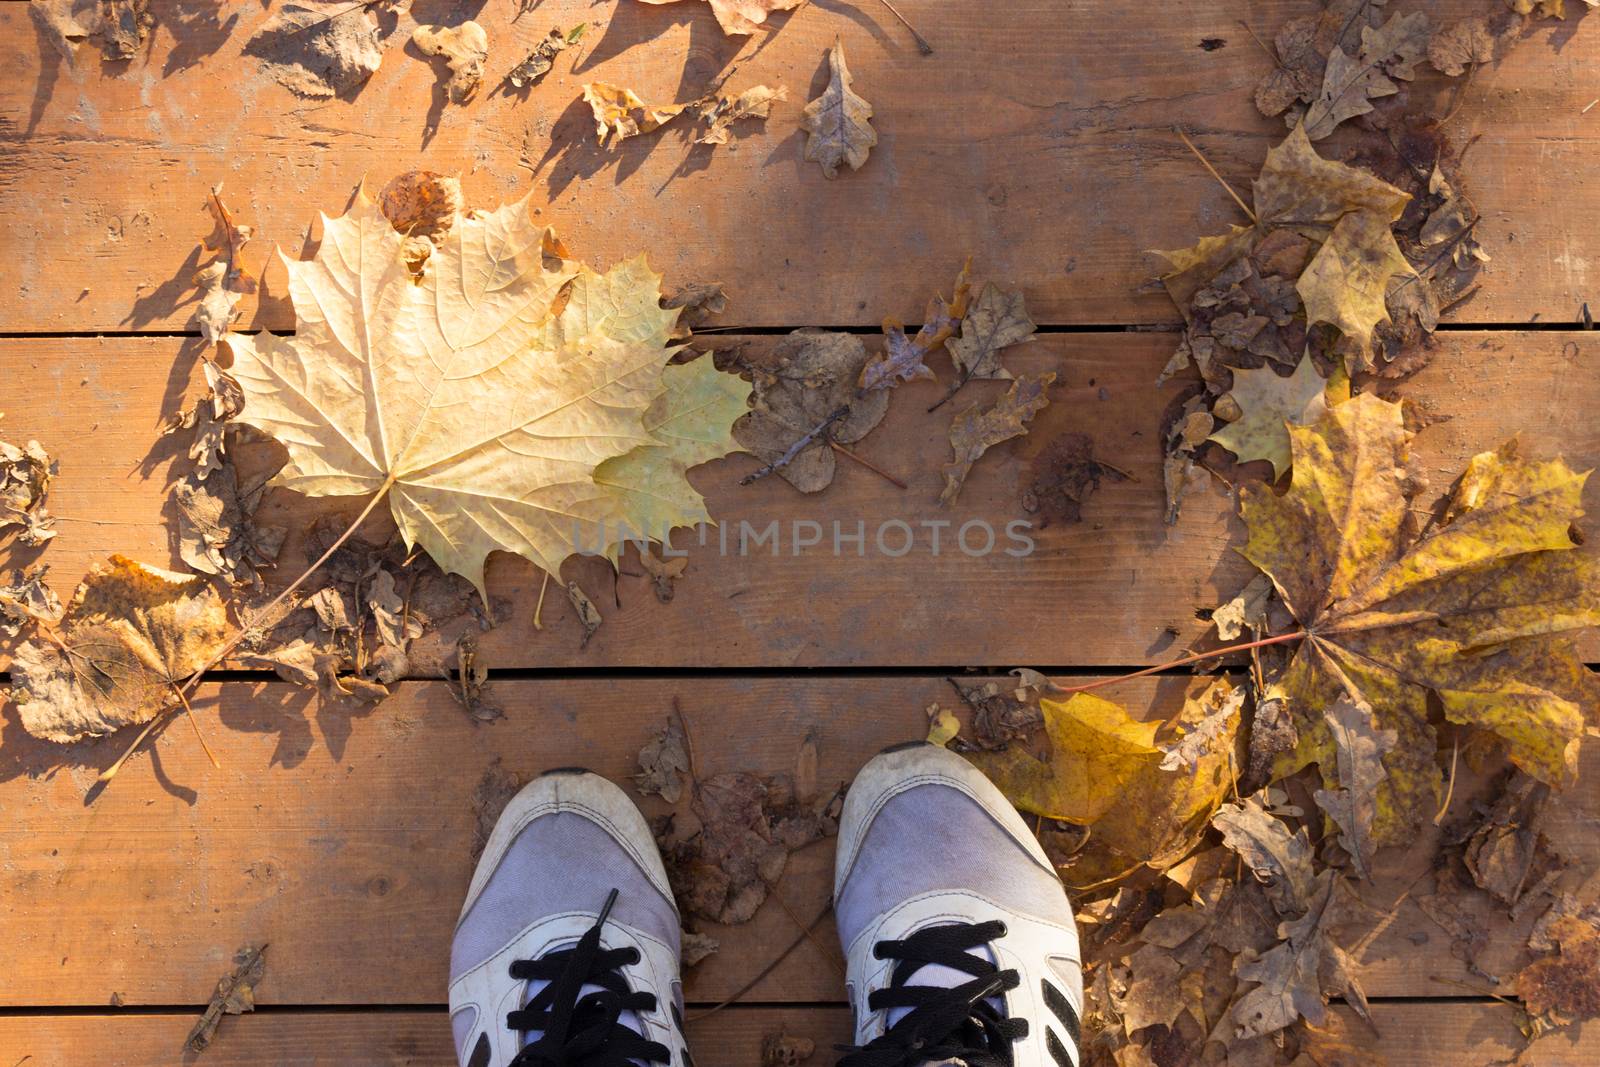 Autumn season in sneakers by liwei12